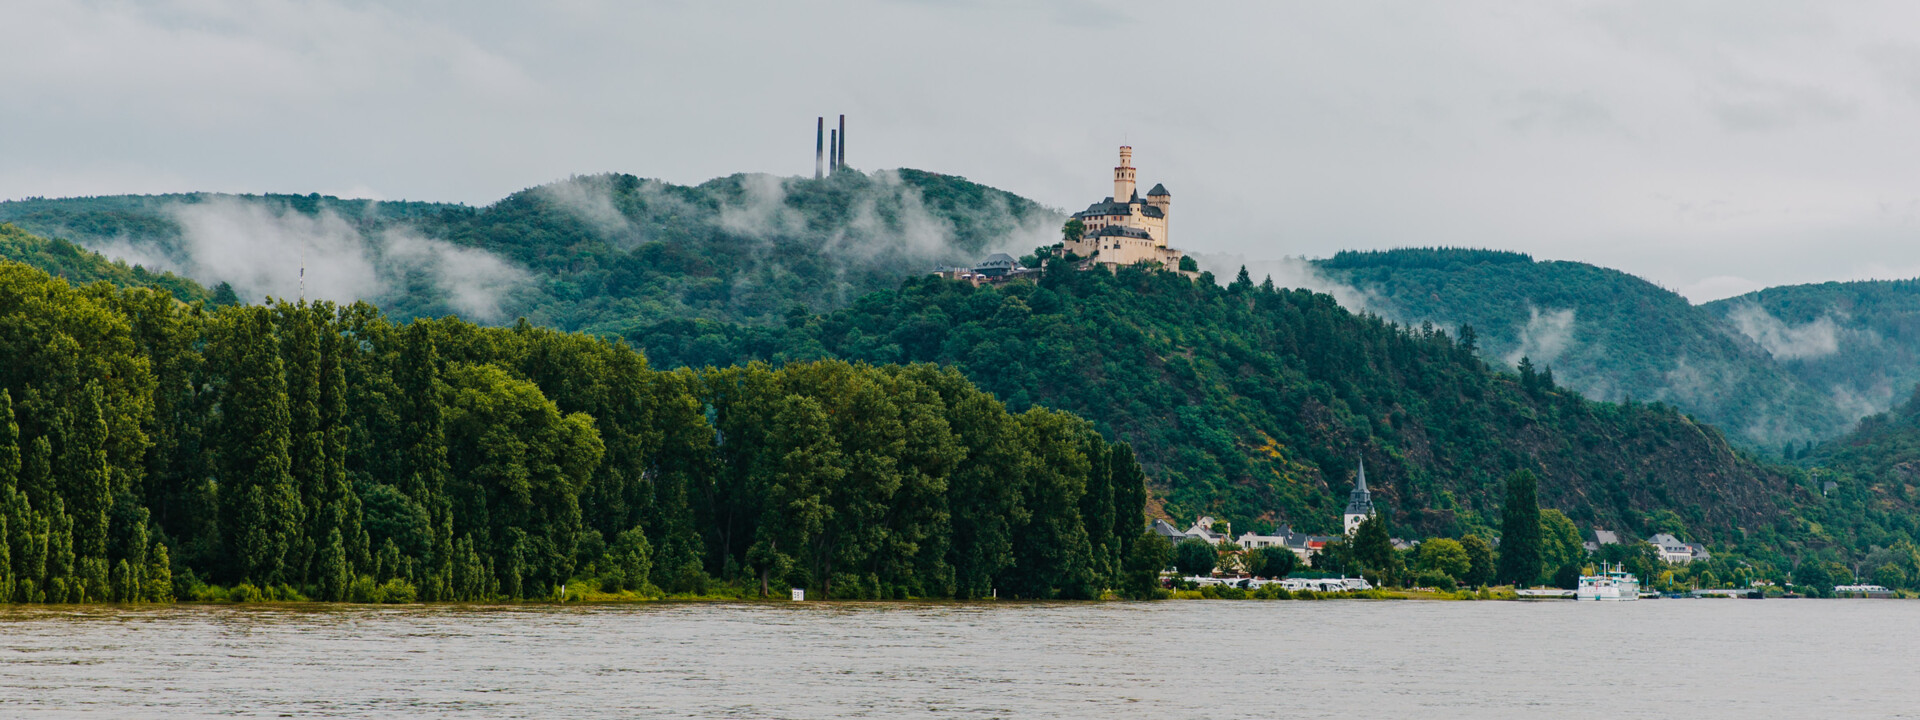 Blick auf die Marksburg vom Rheinufer umgeben von Bergen und Wald mit dem Rhein im Vordergrund ©Koblenz-Touristik GmbH, Henry Tornow